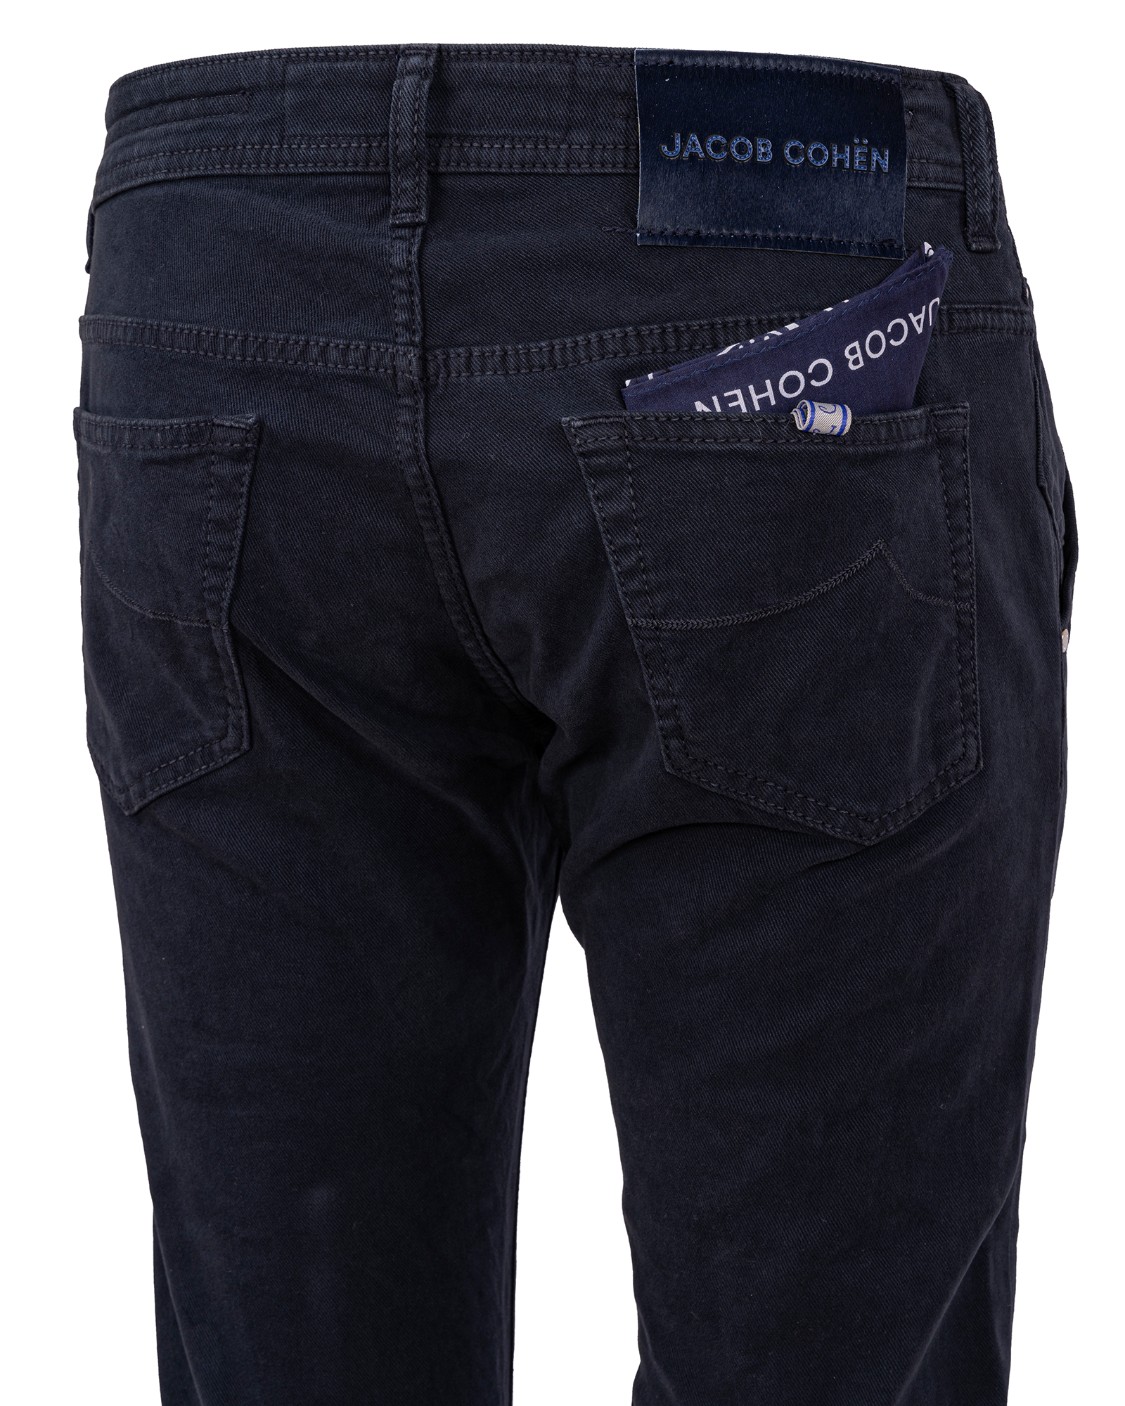 shop JACOB COHEN Saldi Jeans: Jacob Cohen pantalone in cotone elasticizzato.
Modello Leonard (ex 613) con tasca america.
Composizione: 97% cotone 3% elastan.
Made in Italy.. UQM0801 S3657-Y99 number 1958939